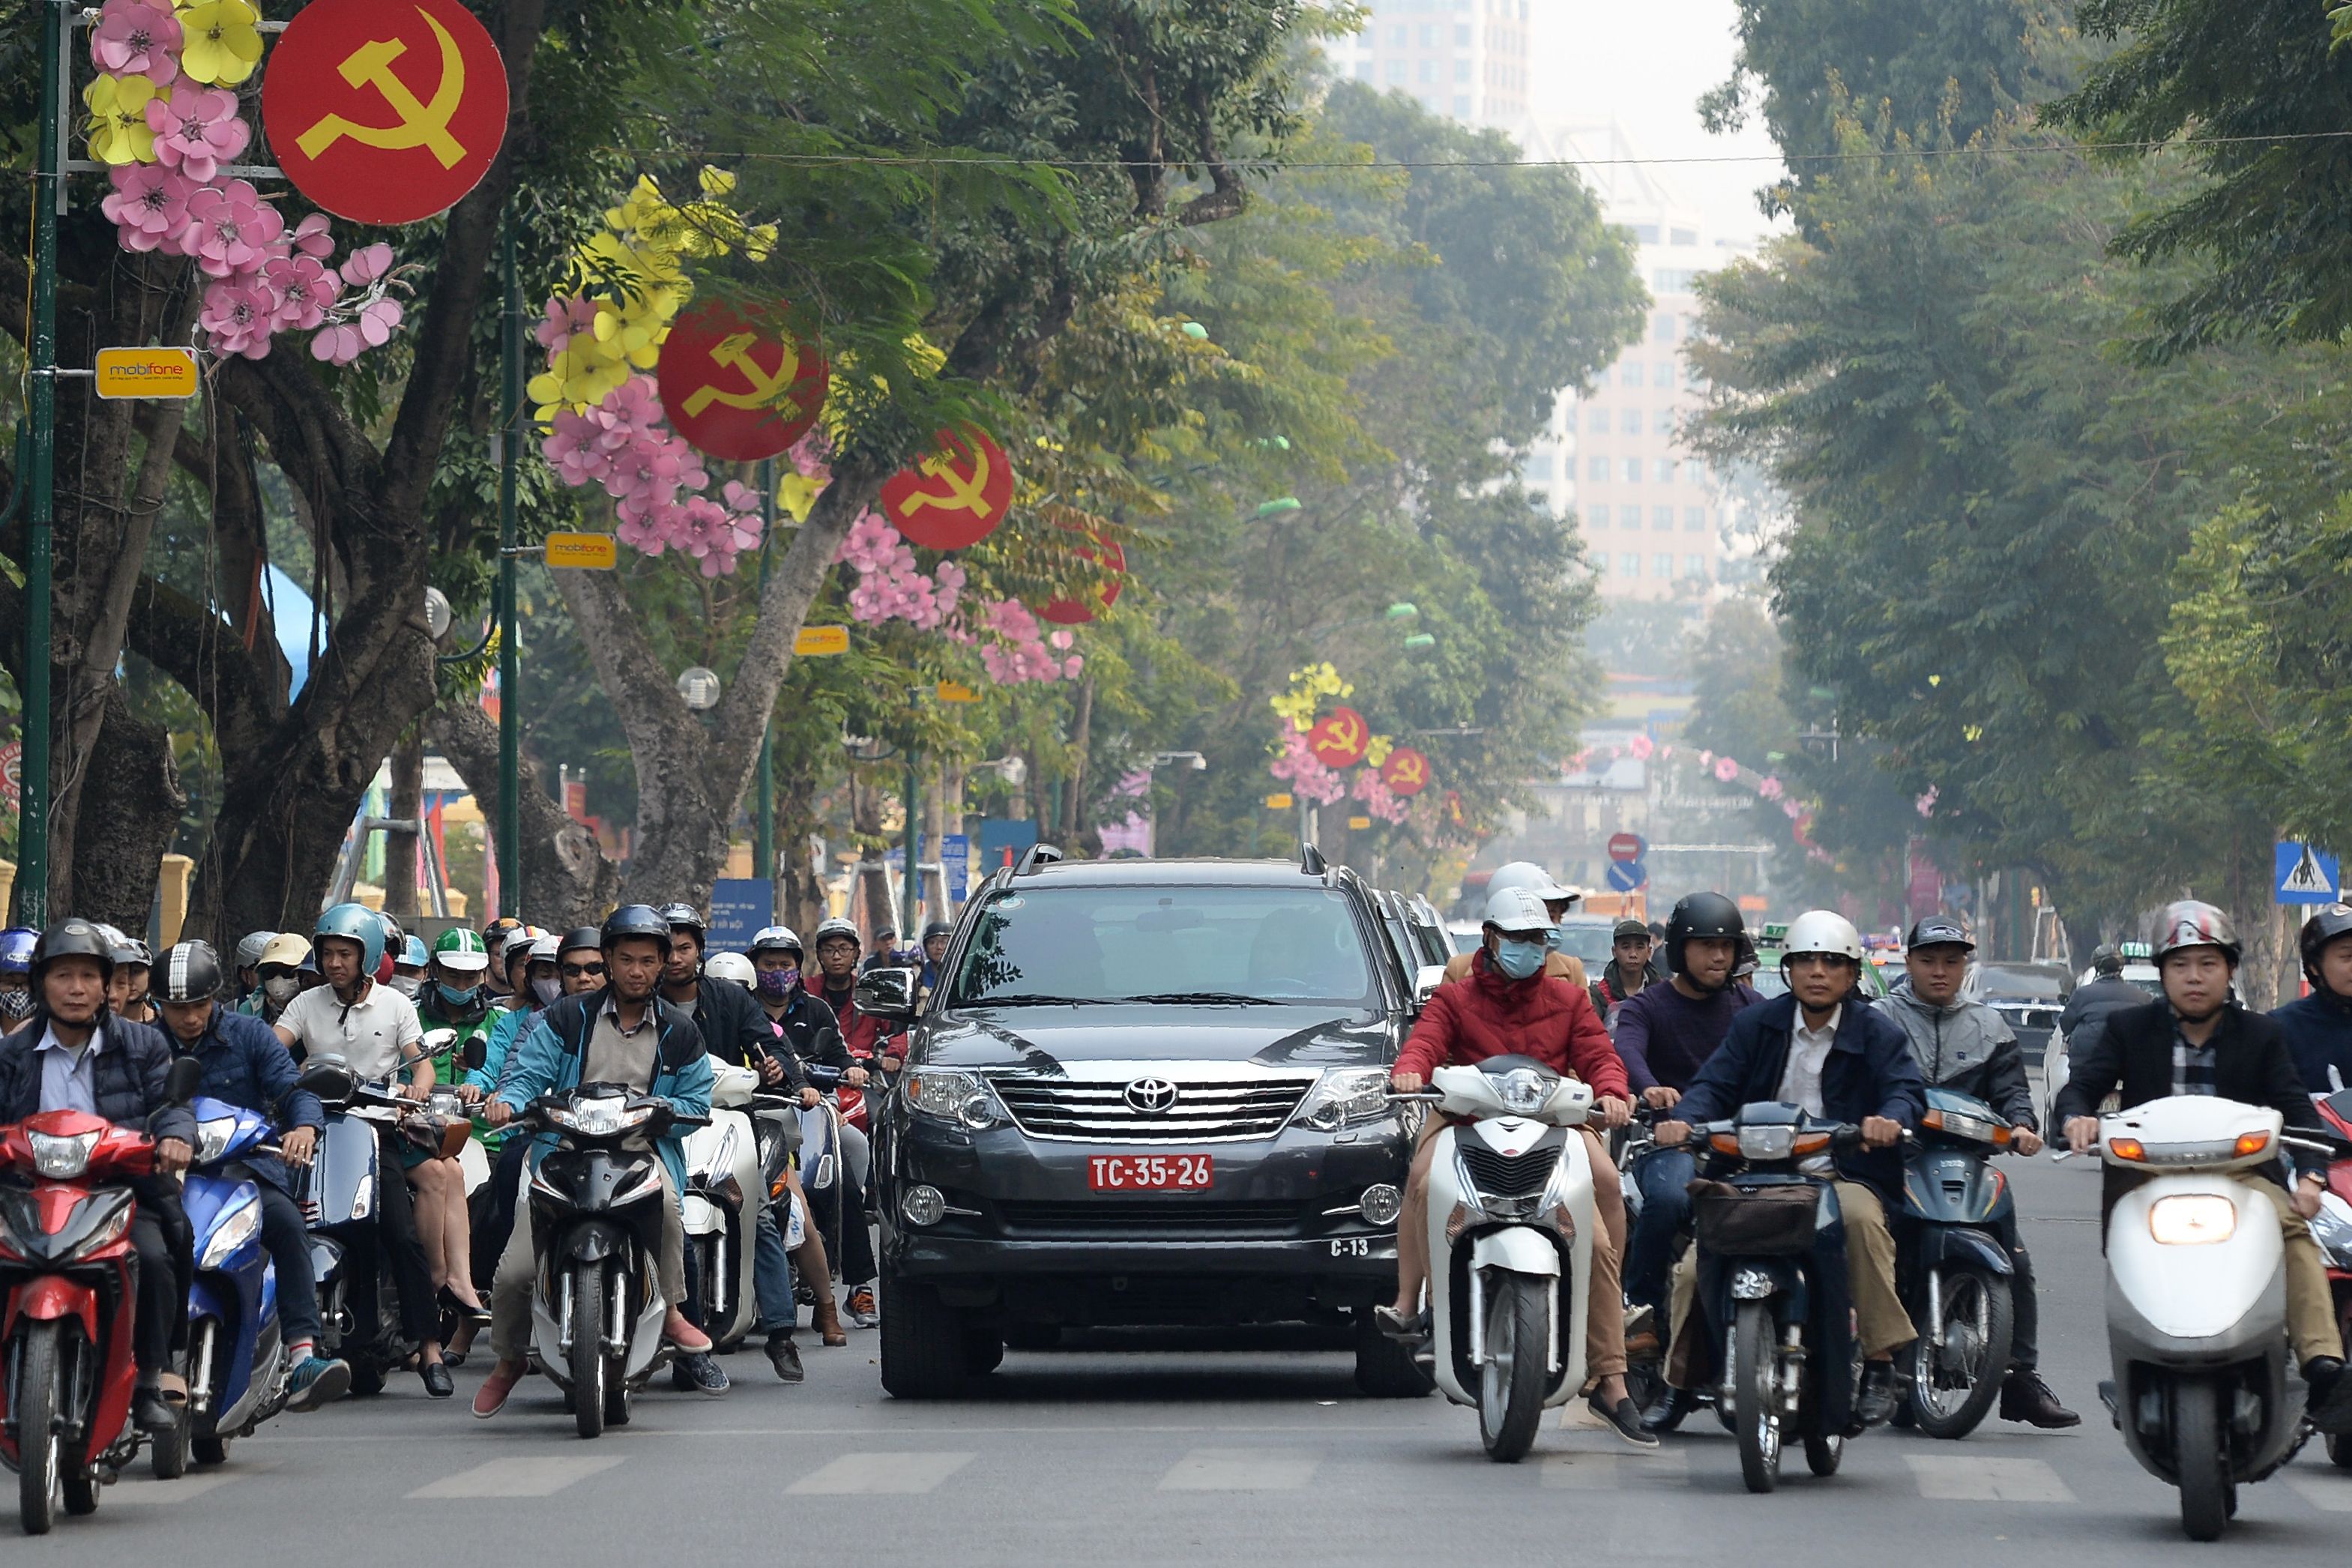 علامات الحزب الشيوعى الحاكم فى فيتنام تنتشر على جانبى الشوارع فى العاصمة هانوى